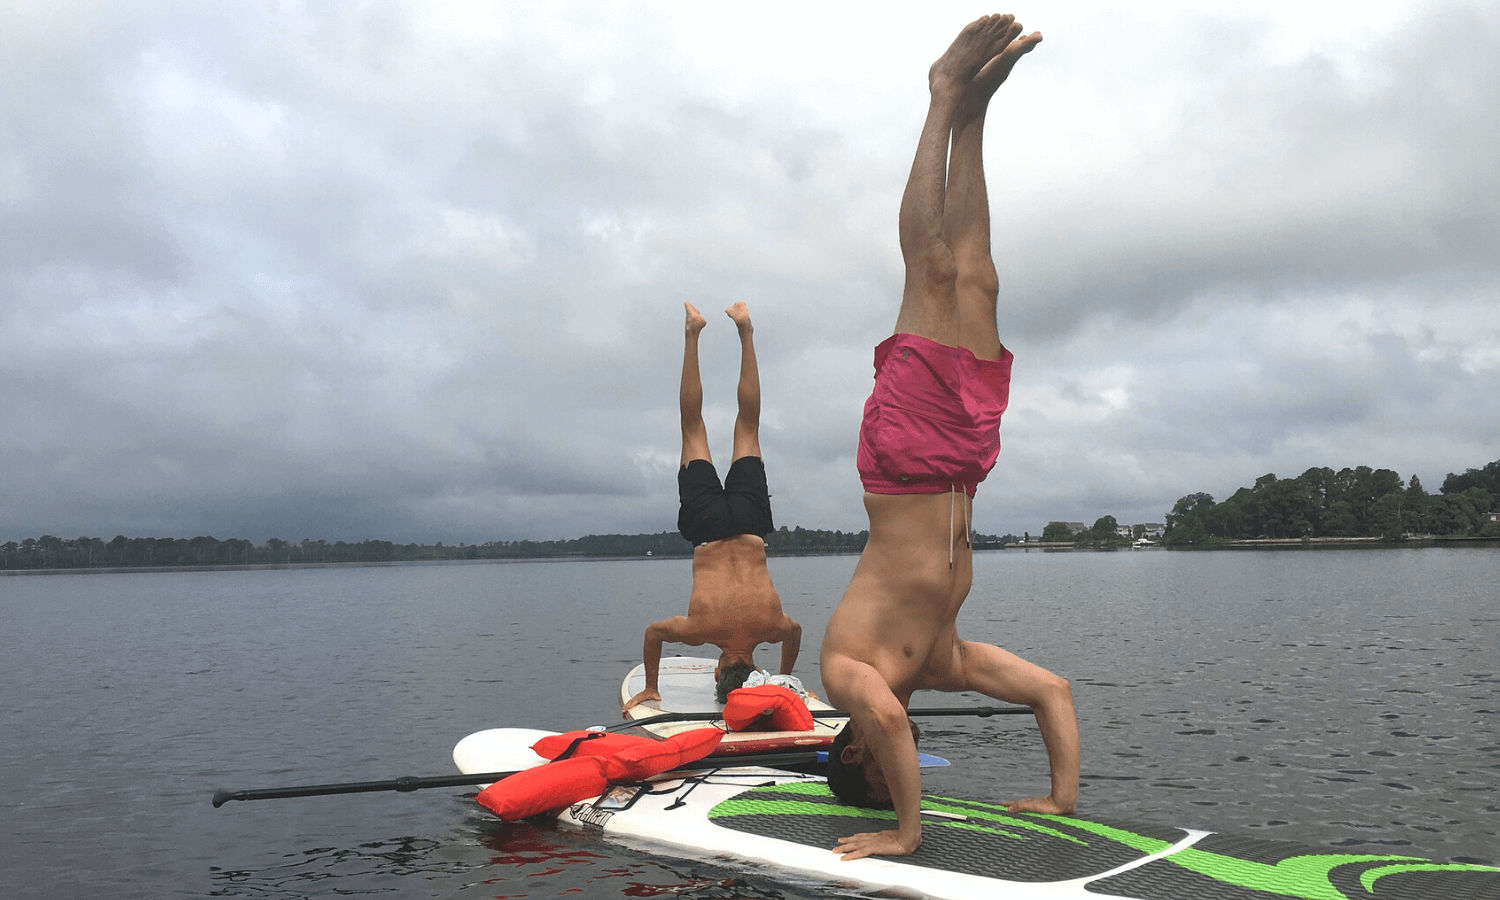 Um die Fitness zu steigern und mehr Motivation für Sport zu bekommen, muss man die richtige Sportart finden. Auf dem Foto machen zwei Männer Yoga auf einem SUP Brett. Sie üben Handstand. © iStock.com